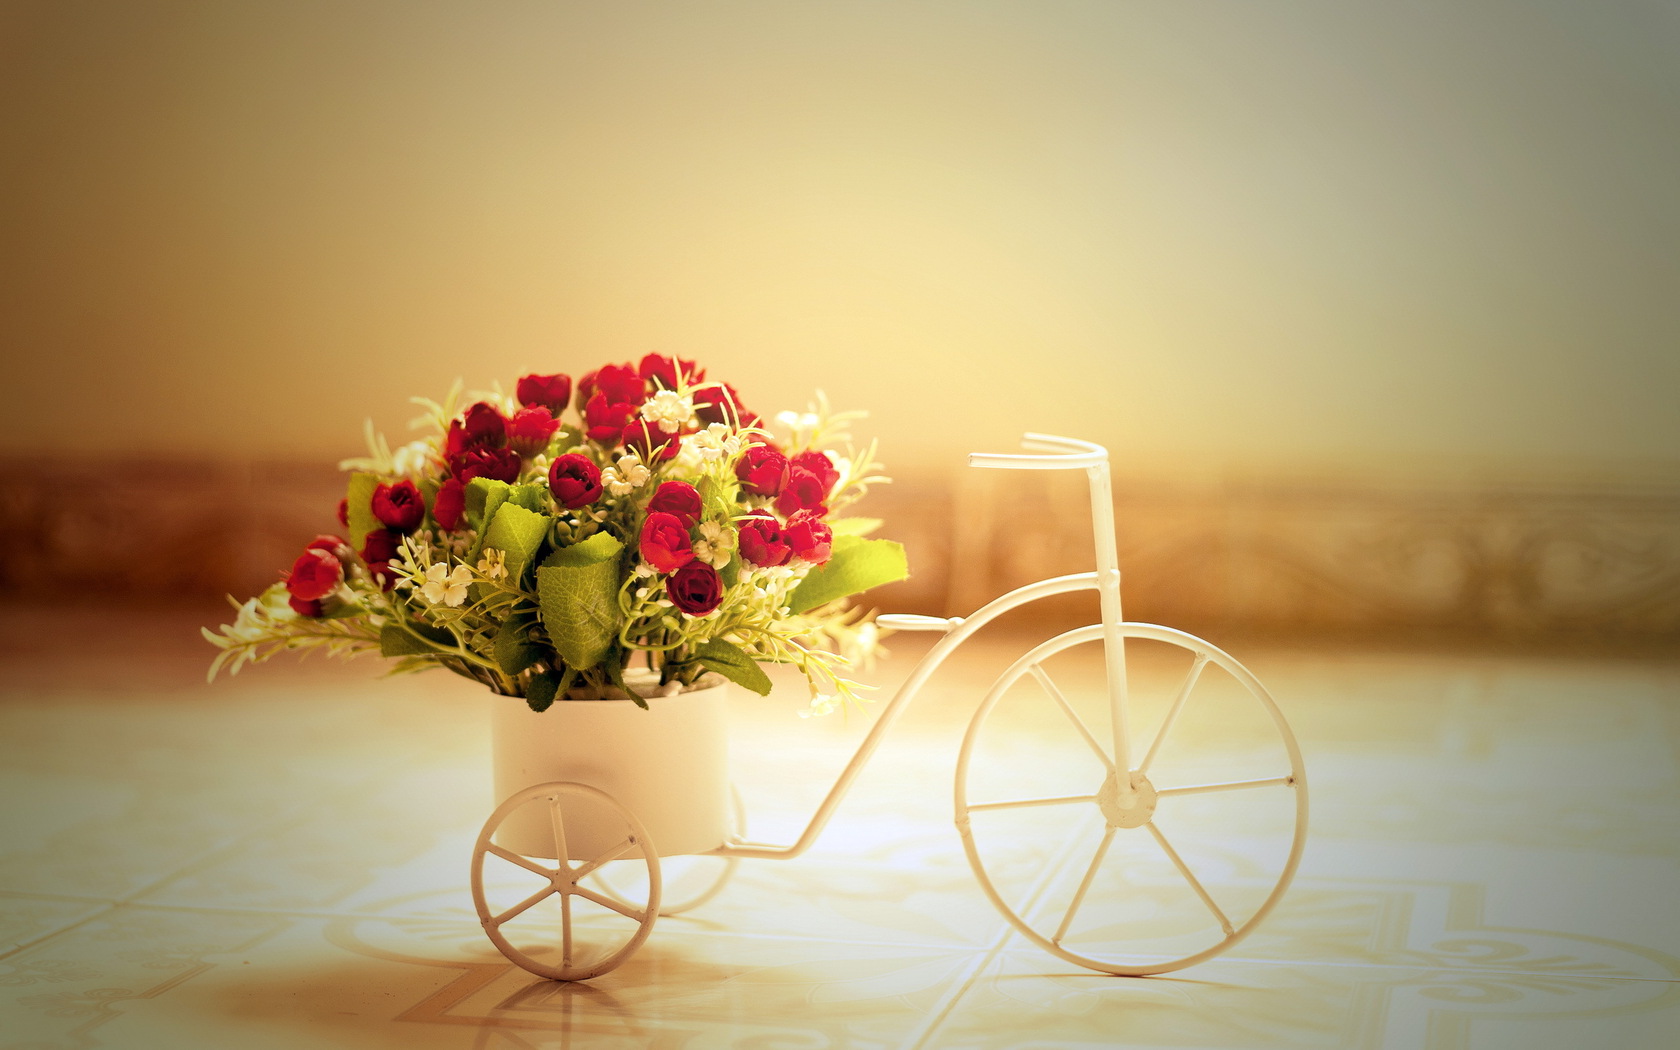  Цветы цветы, розы, велосипед картинка, обои рабочий стол